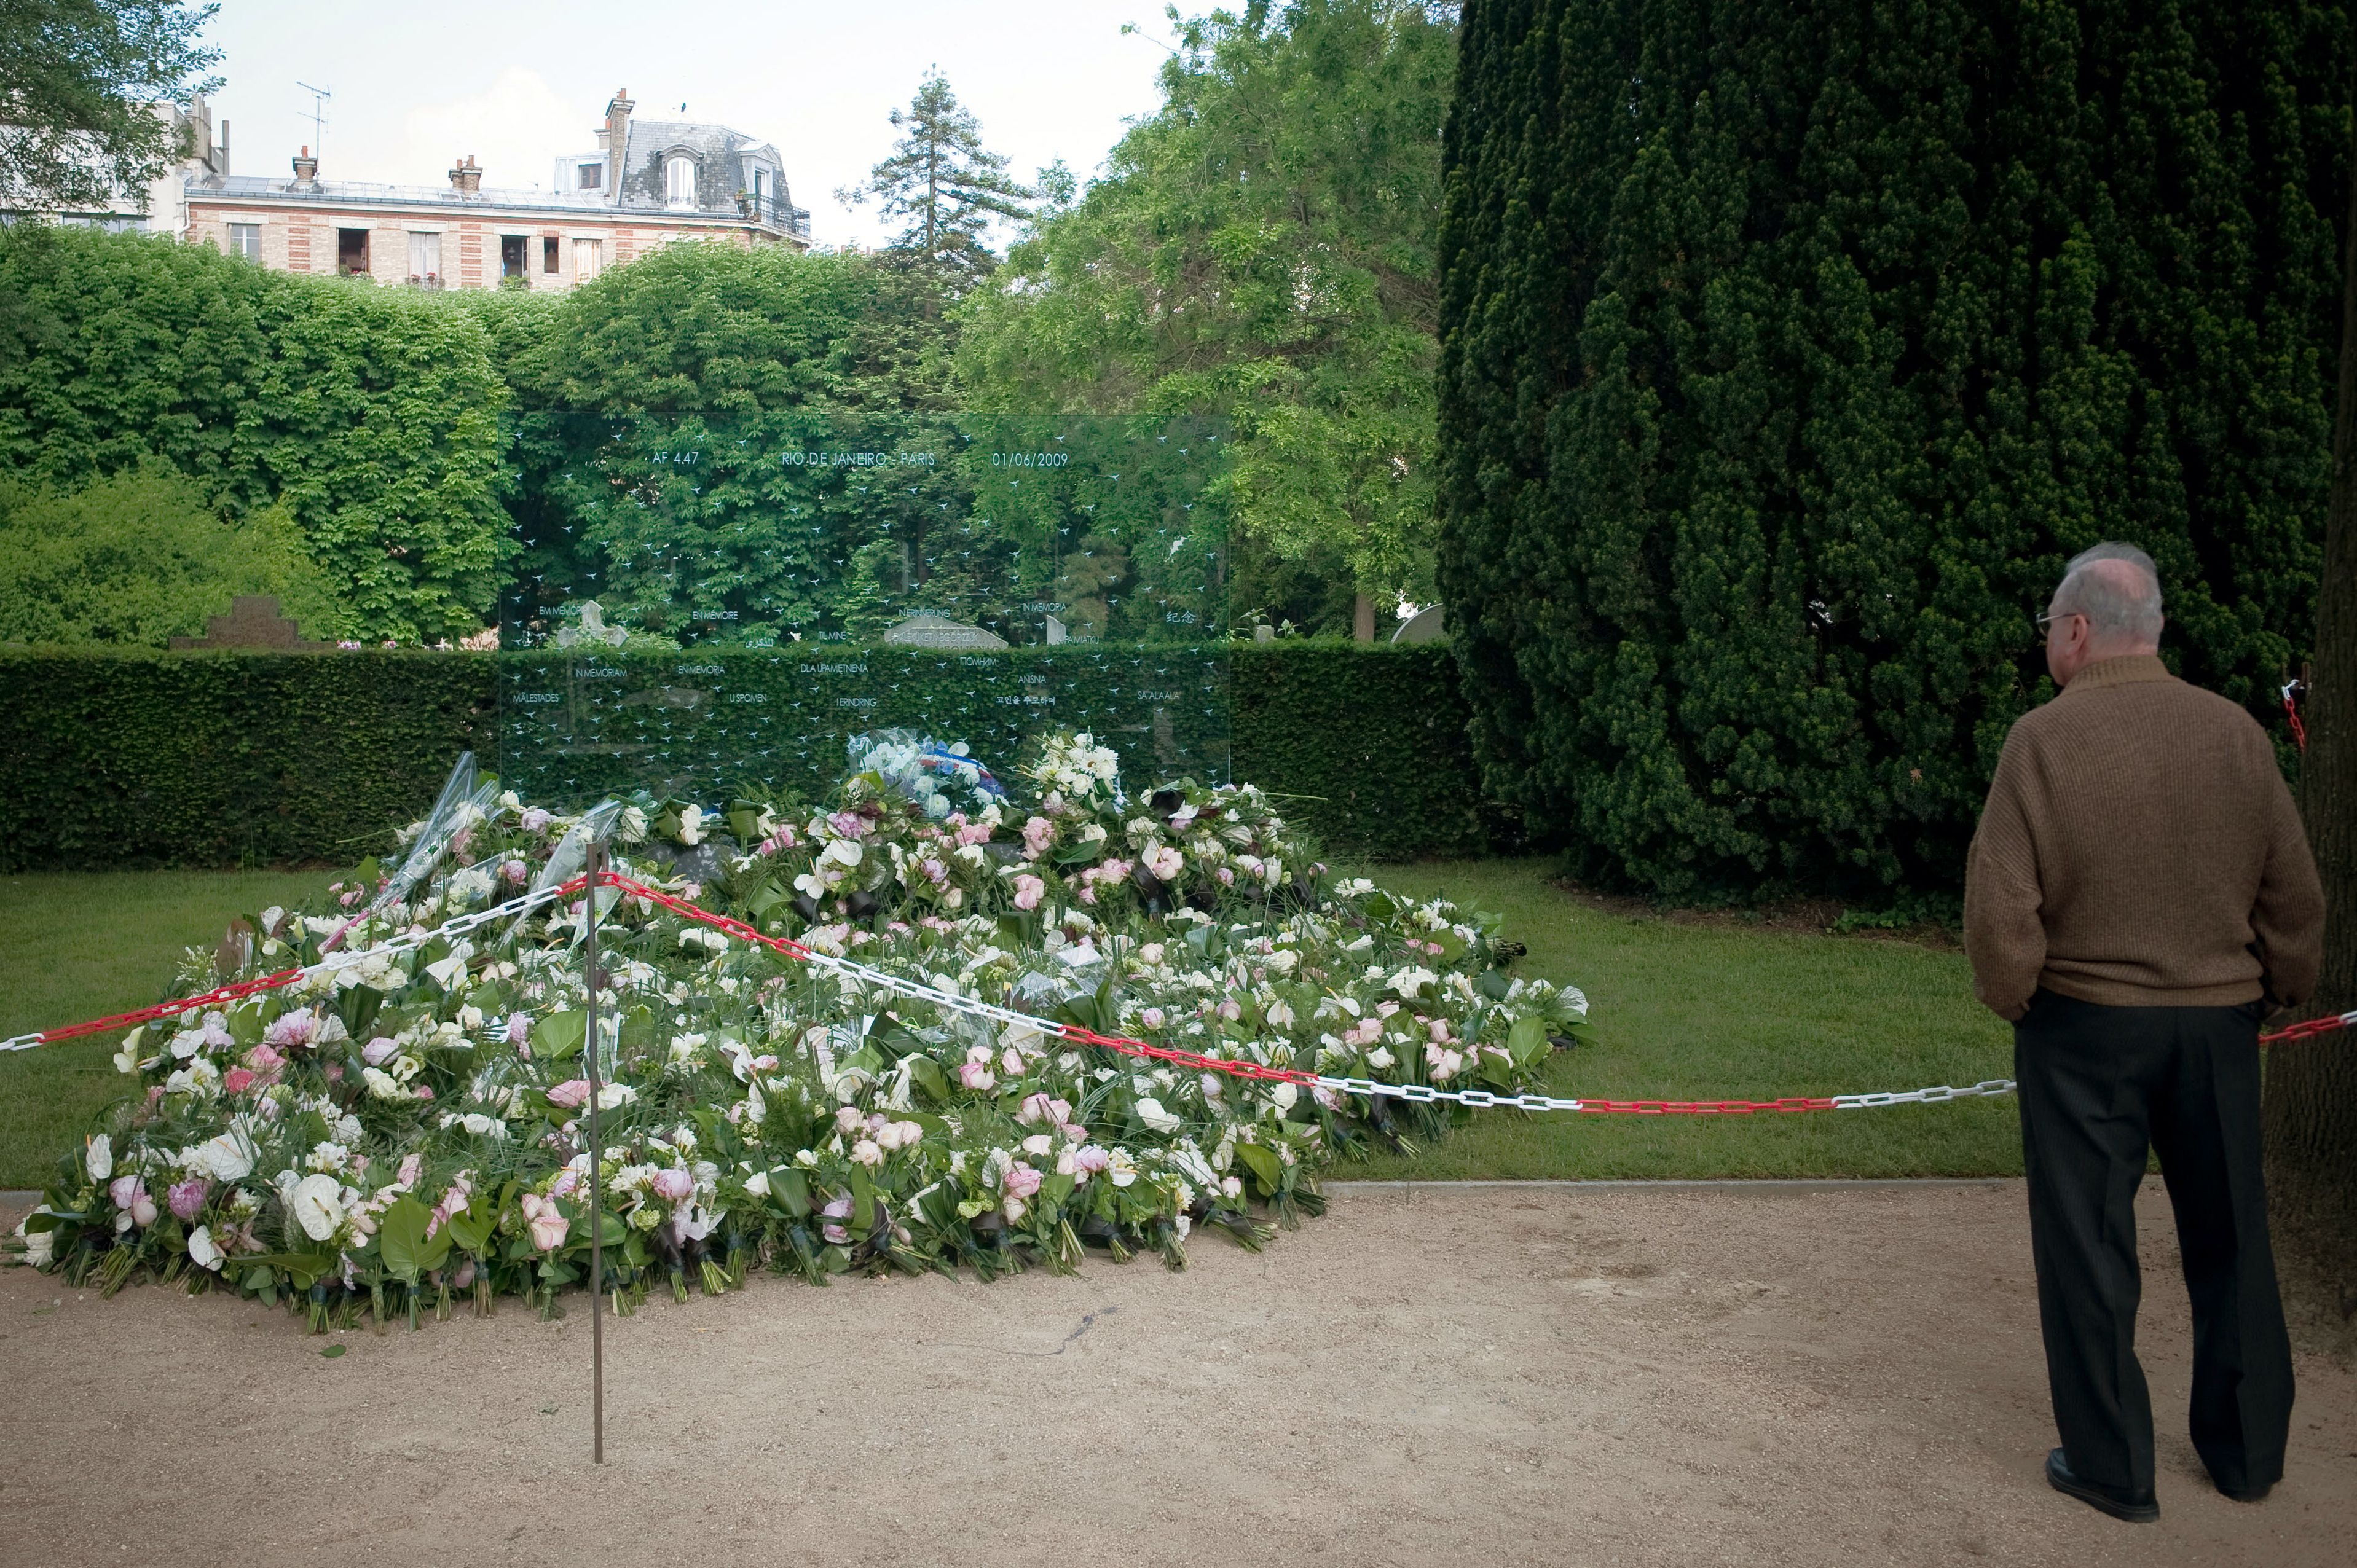 Blumen für die Opfer des 2009 abgestürzten Air France A330, Flug AF447 | Quelle: Getty Images